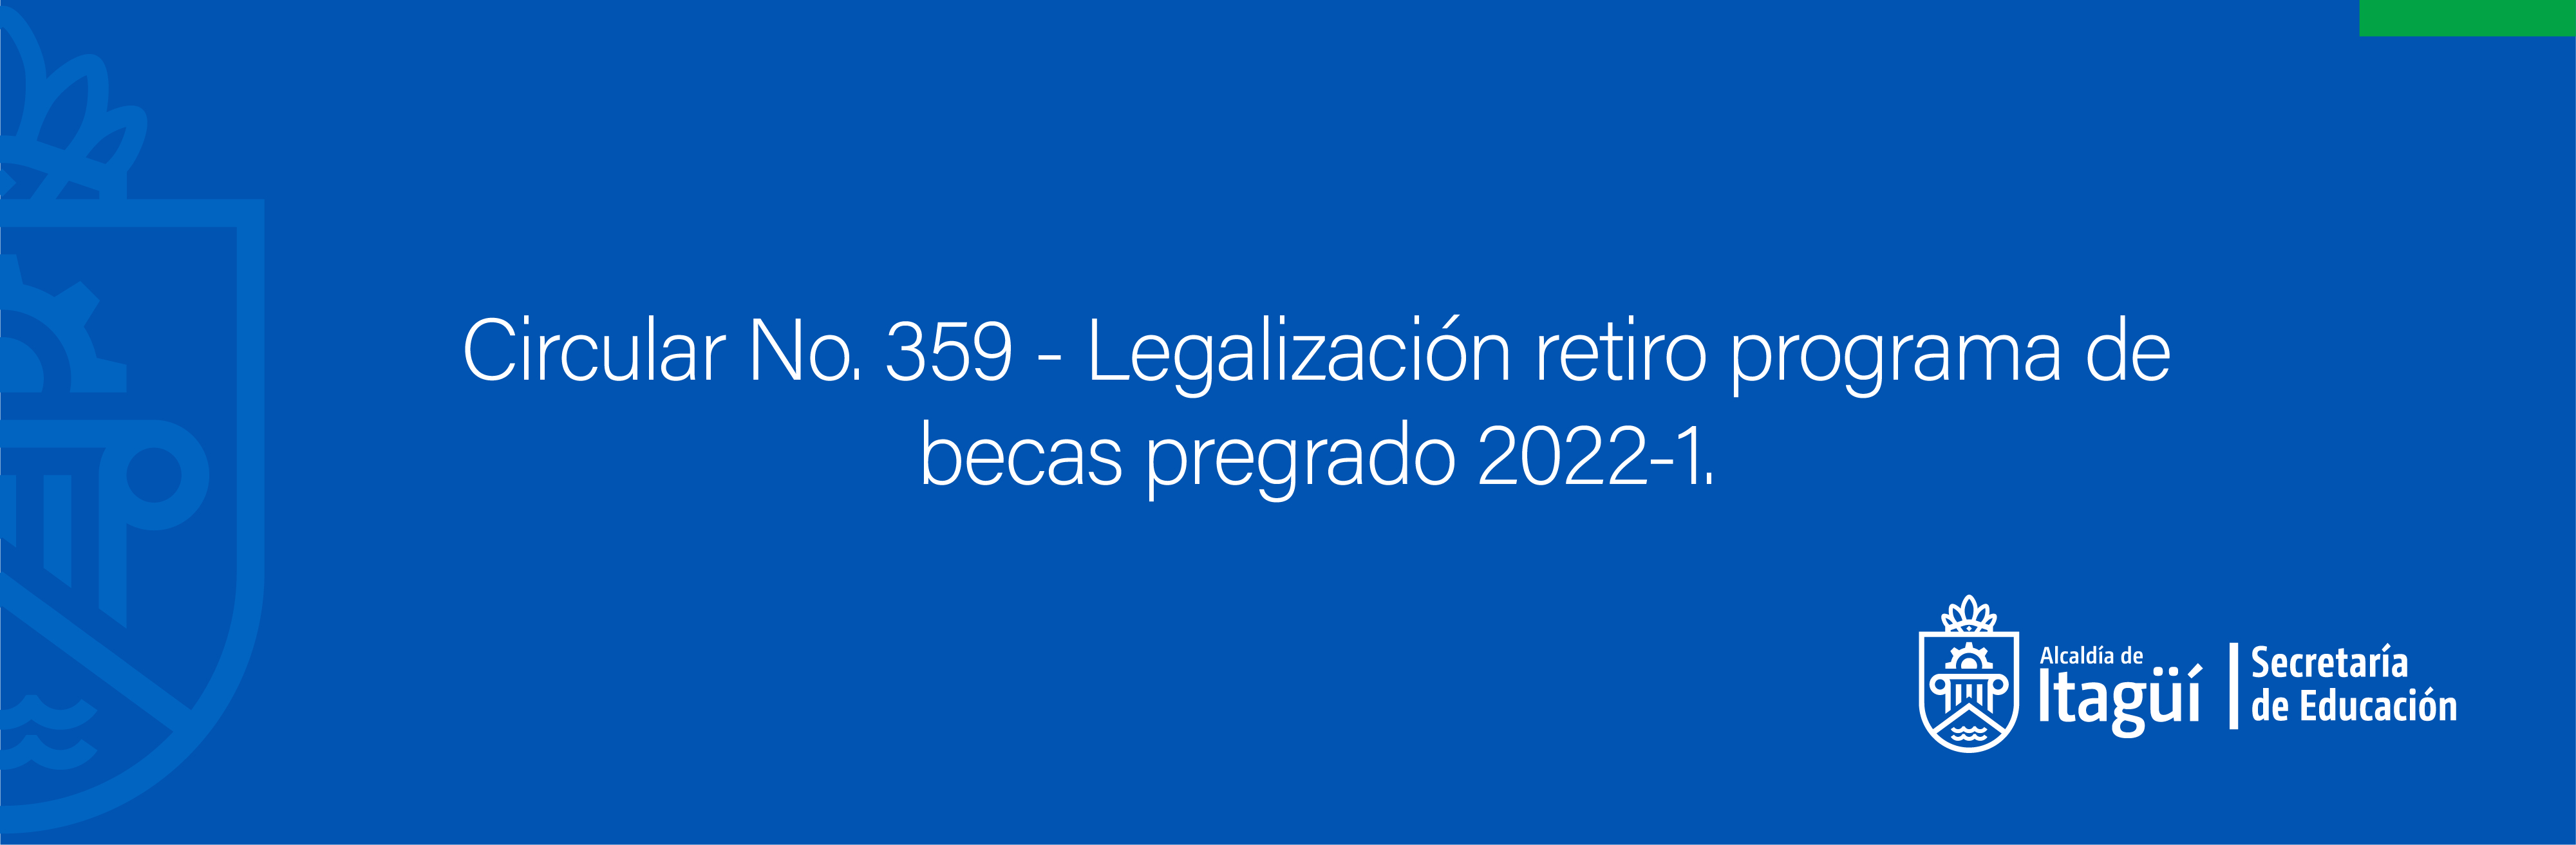 Circular No. 359 - Legalización retiro programa de becas pregrado 2022-1.